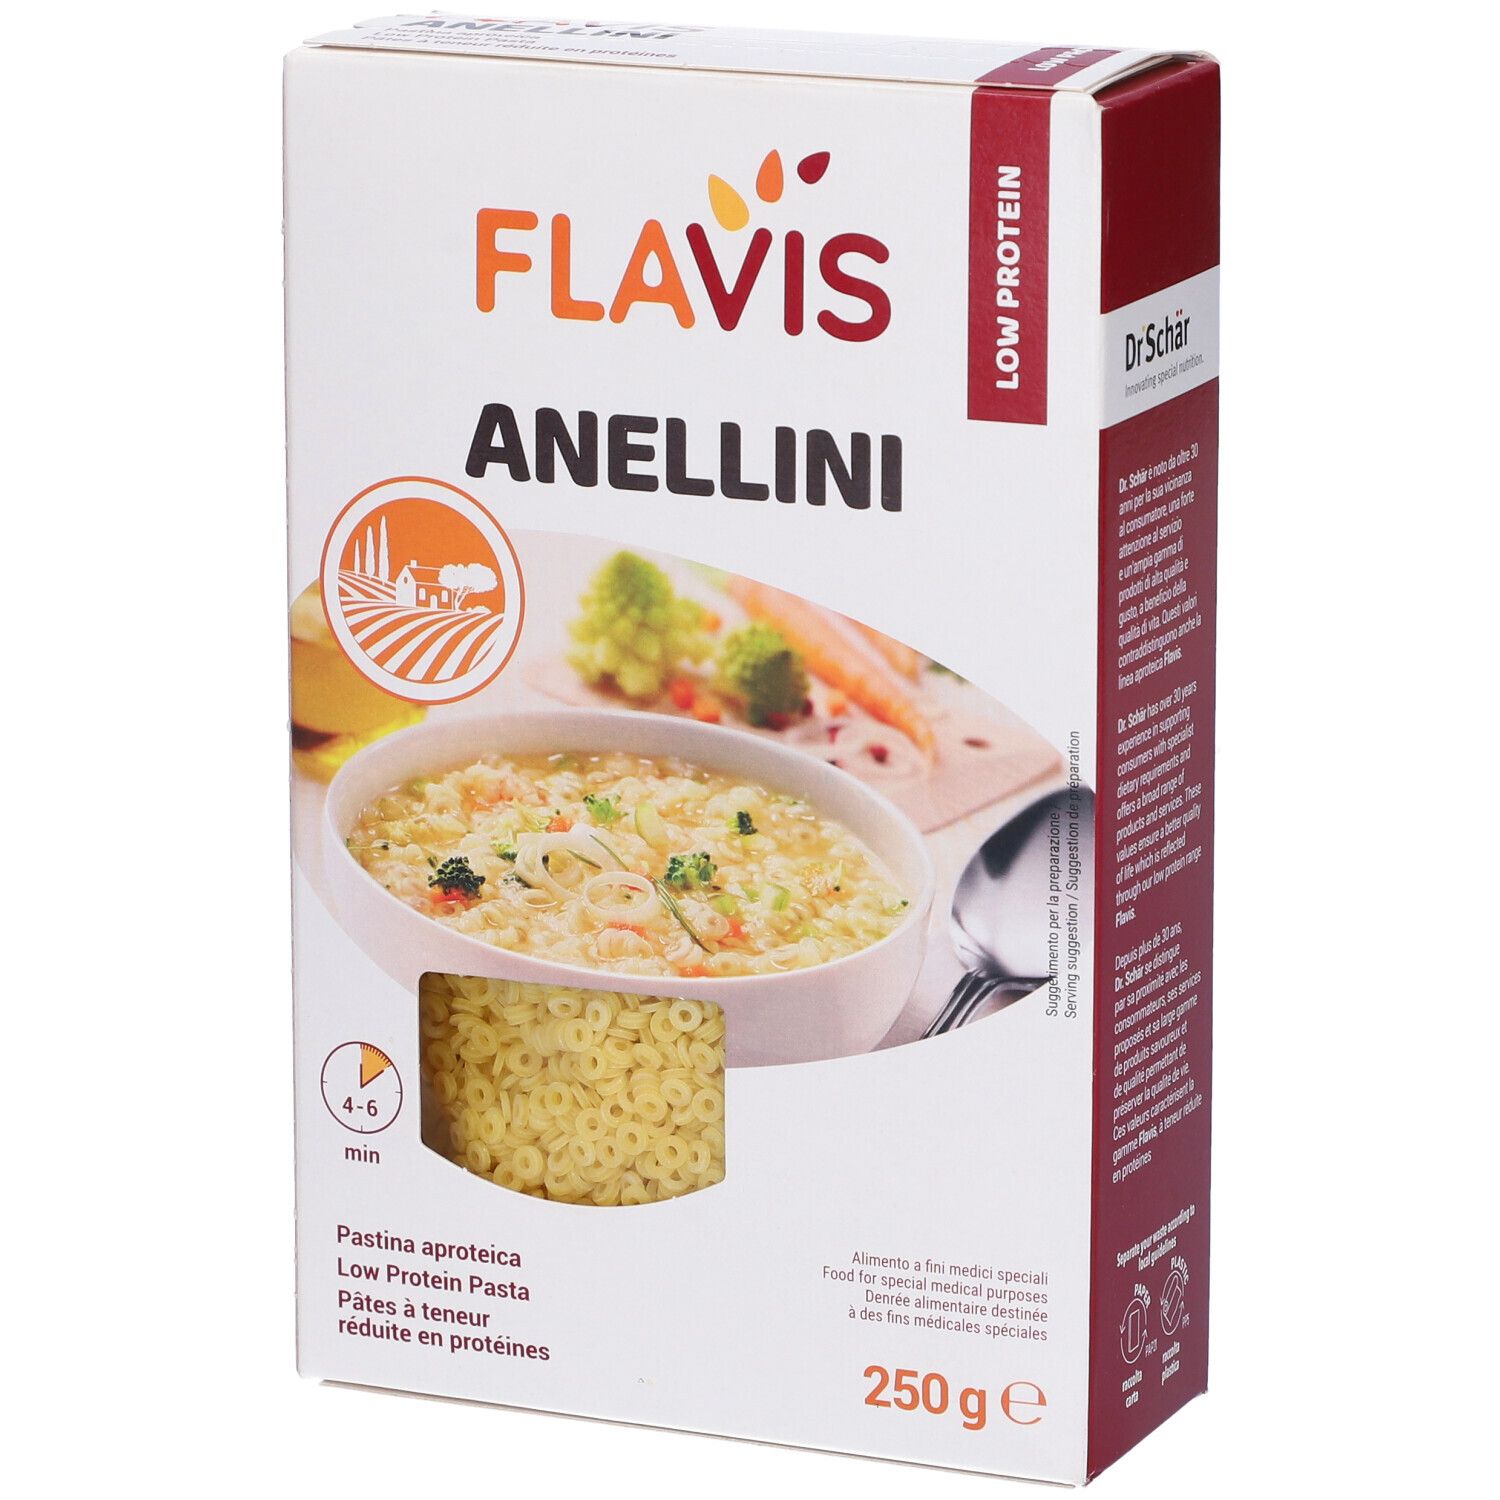 FLAVIS Anellini